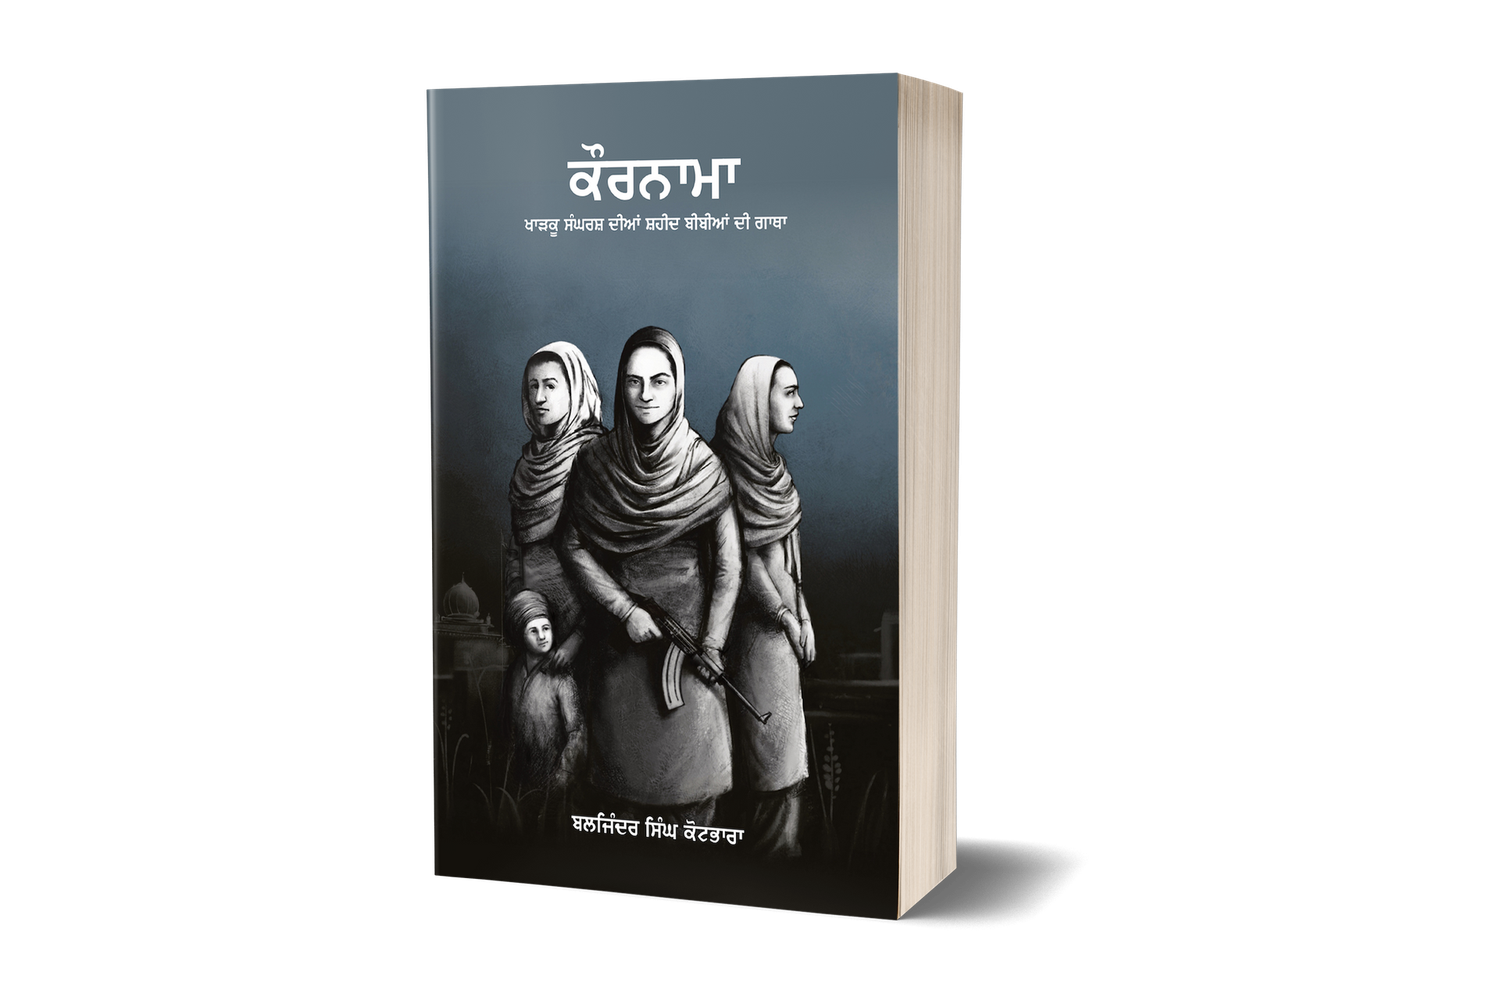 ਕੌਰਨਾਮਾ – ਖਾੜਕੂ ਸੰਘਰਸ਼ ਦੀਆਂ ਸ਼ਹੀਦ ਬੀਬੀਆਂ ਦੀ ਗਾਥਾ | Kaurnama - The story of Shaheed Bibia from the Kharku Sangarsh - PRE ORDER